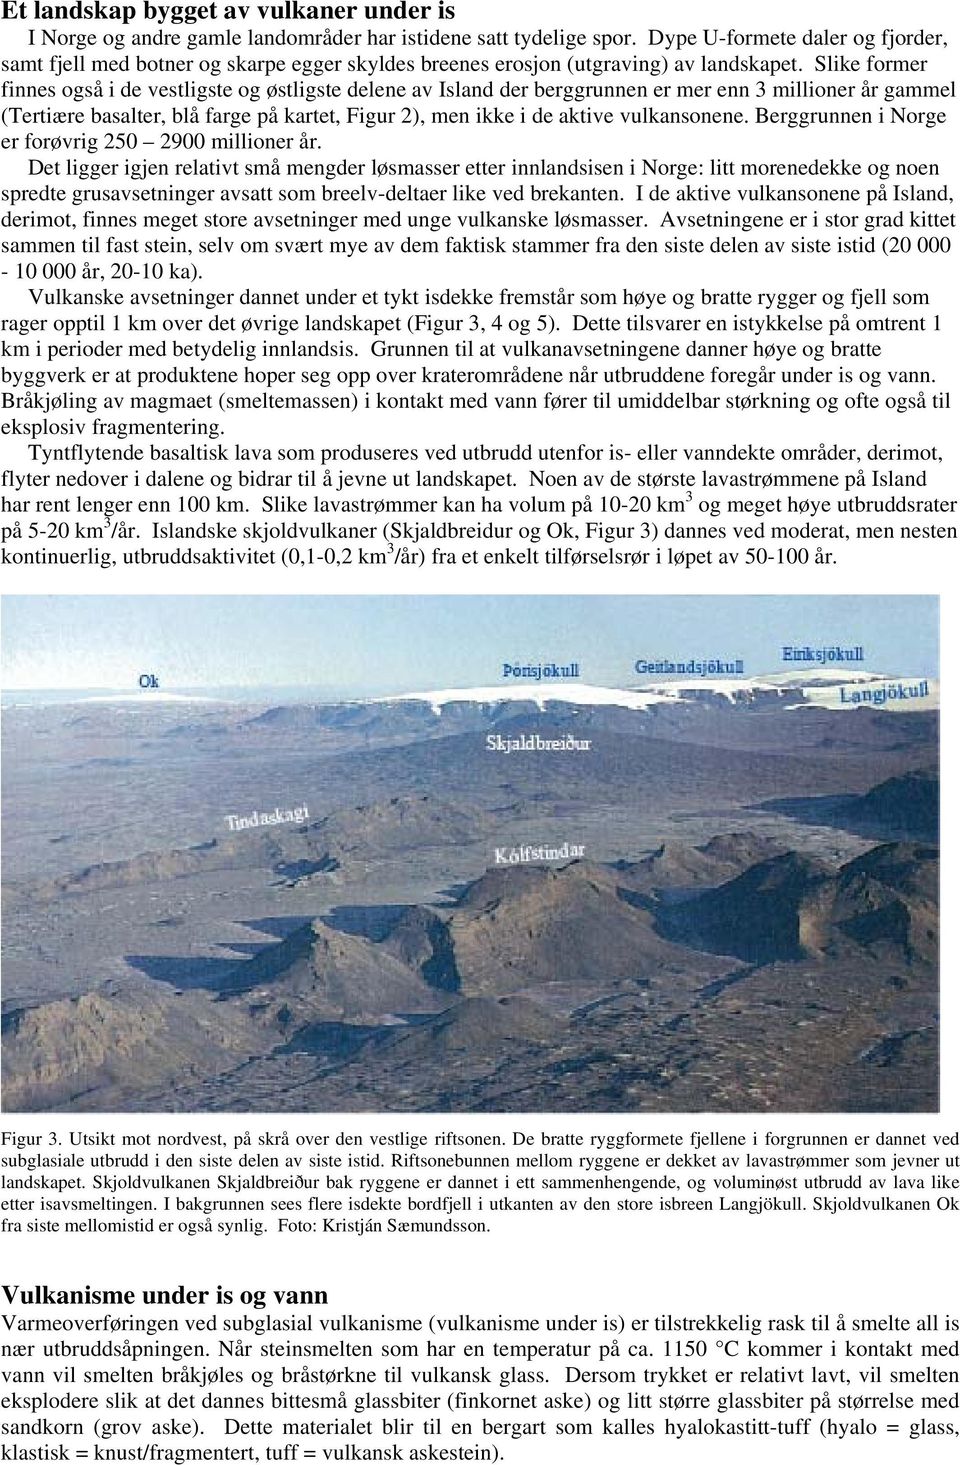 Slike former finnes også i de vestligste og østligste delene av Island der berggrunnen er mer enn 3 millioner år gammel (Tertiære basalter, blå farge på kartet, Figur 2), men ikke i de aktive